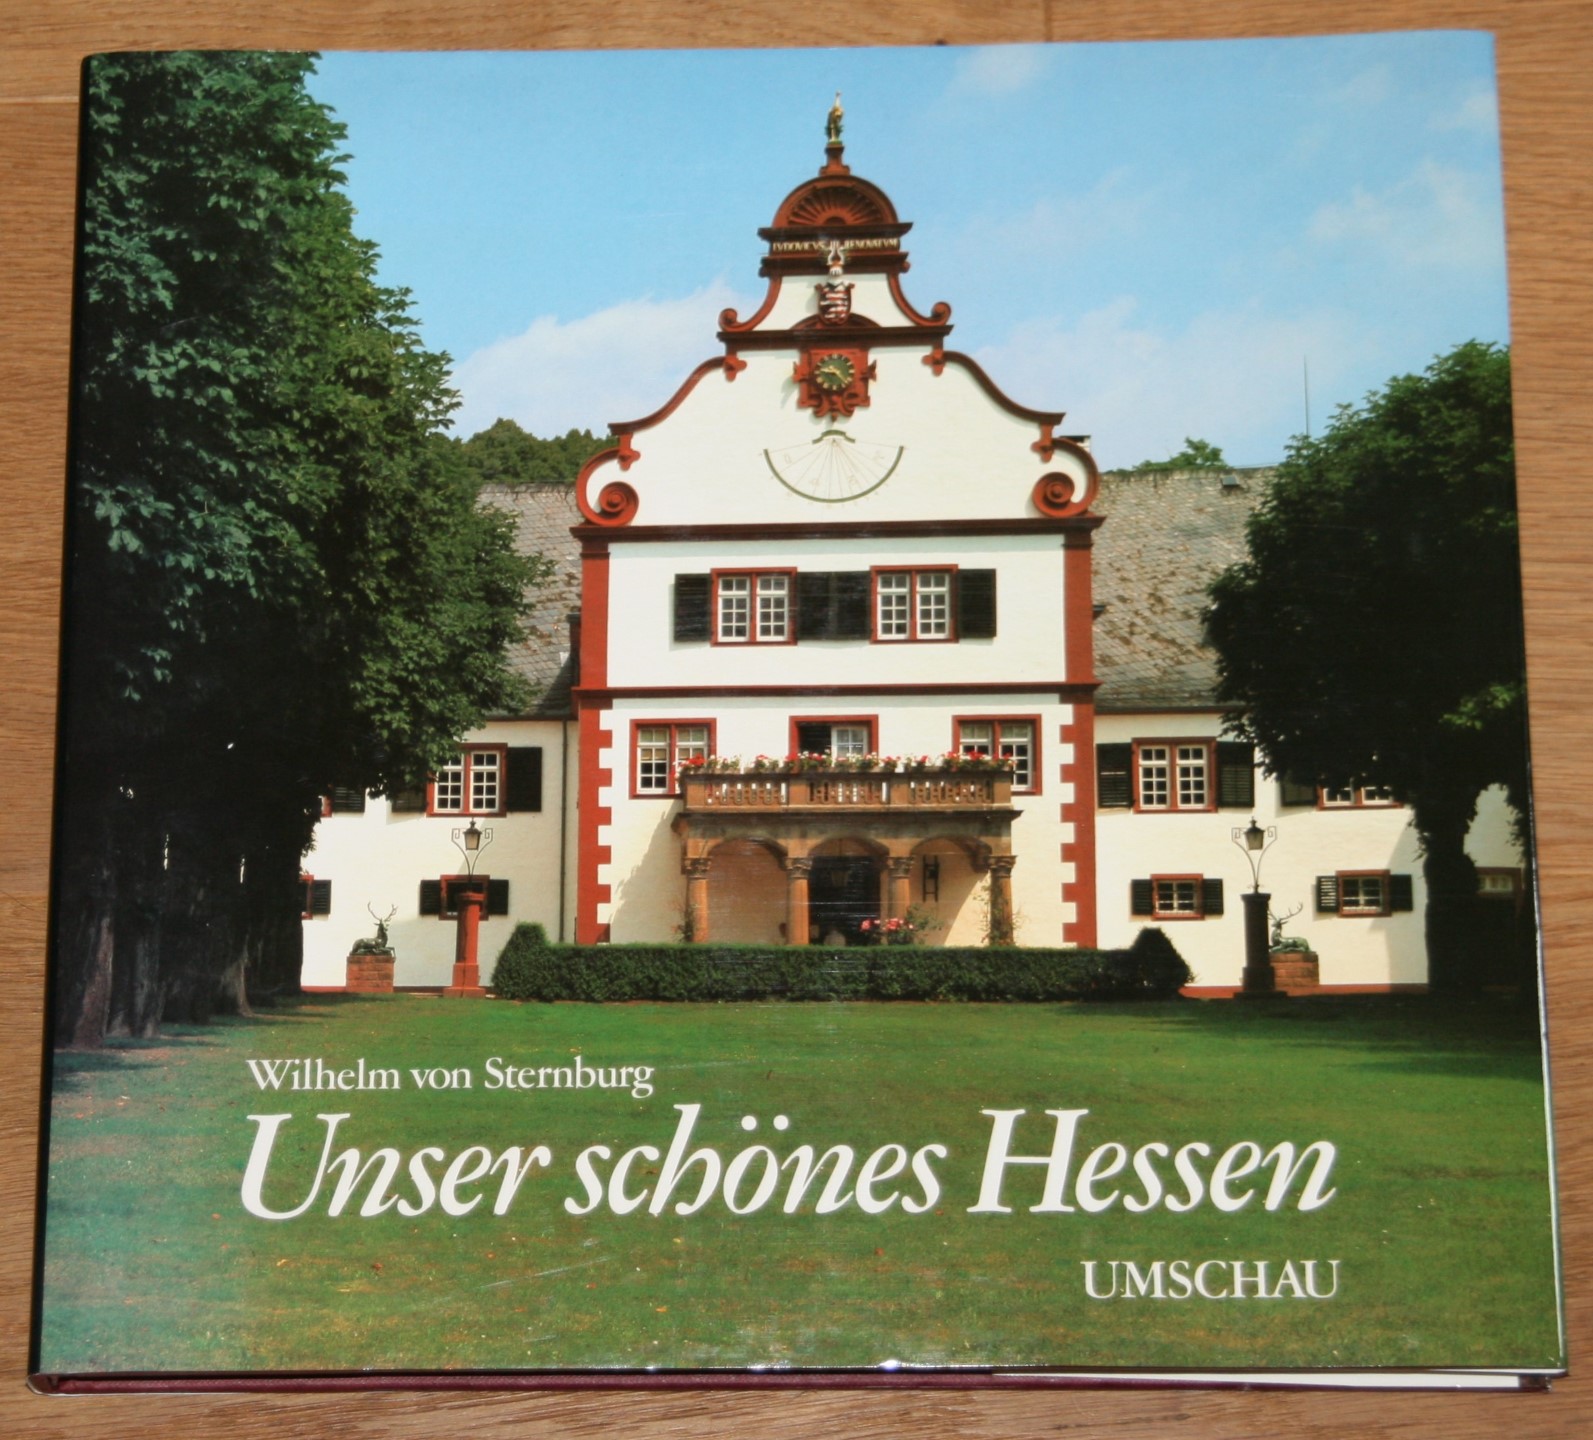 Unser schönes Hessen: Land der Mitte. [Hesse - our beautiful country. Notre beau Land de Hesse.], - von Sternburg, Wilhelm